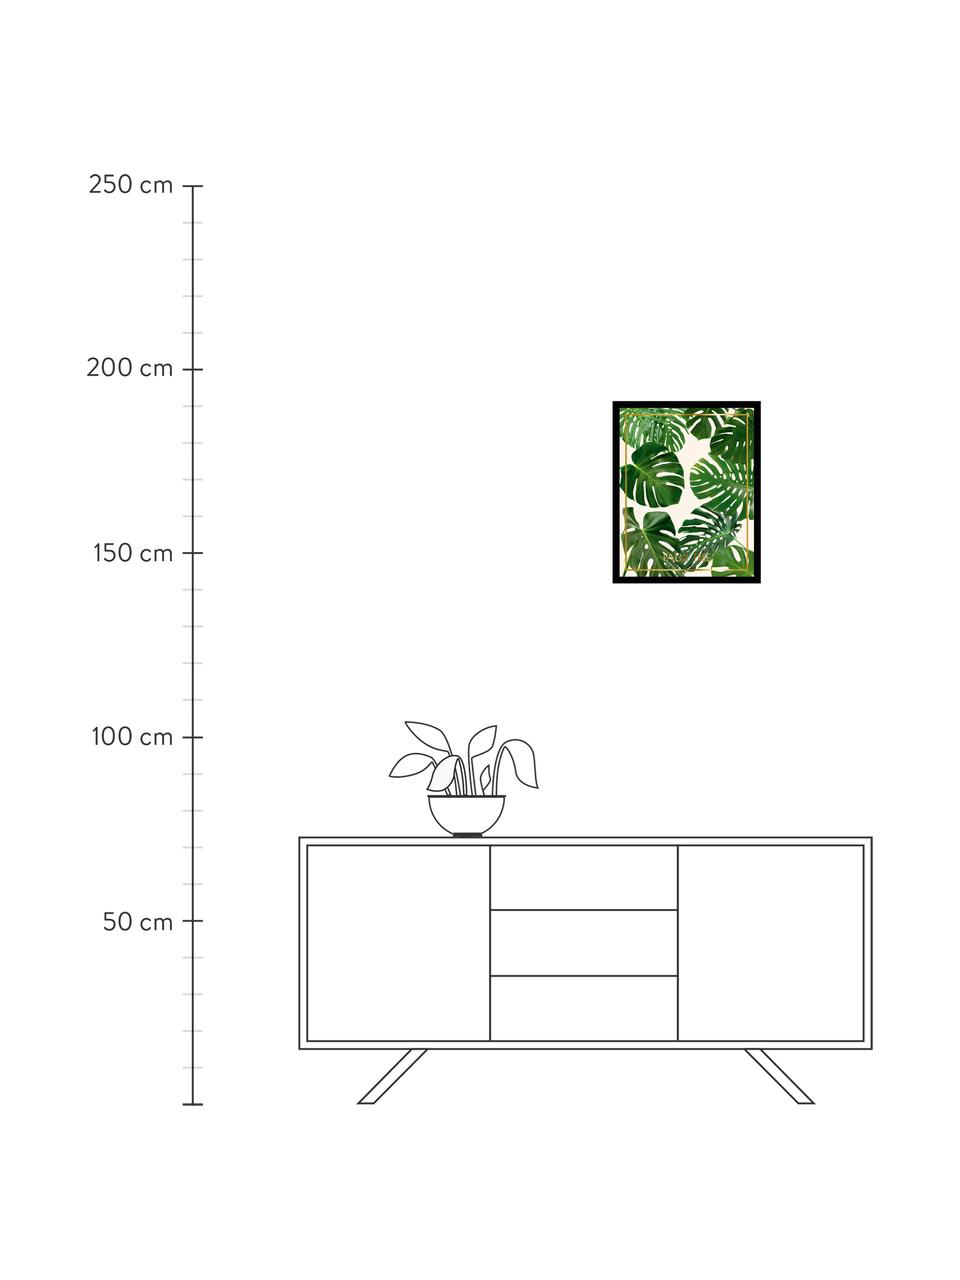 Gerahmter Digitaldruck Palm Tree II, Bild: Digitaldruck, Rahmen: Kunststoffrahmen mit Glas, Bunt, B 40 x H 50 cm